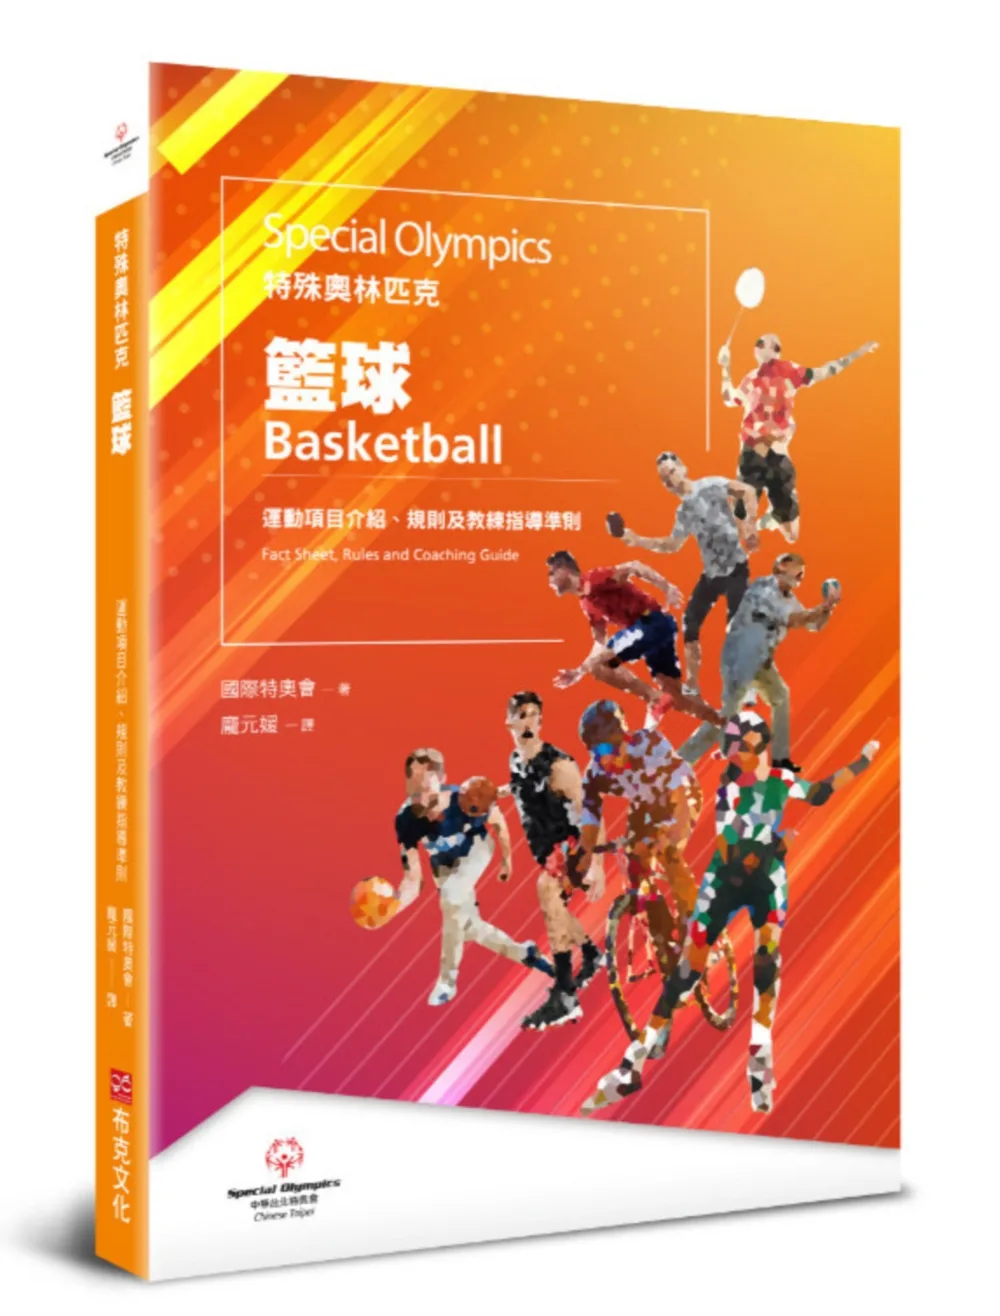 特殊奧林匹克：籃球——運動項目介紹、規格及教練指導準則